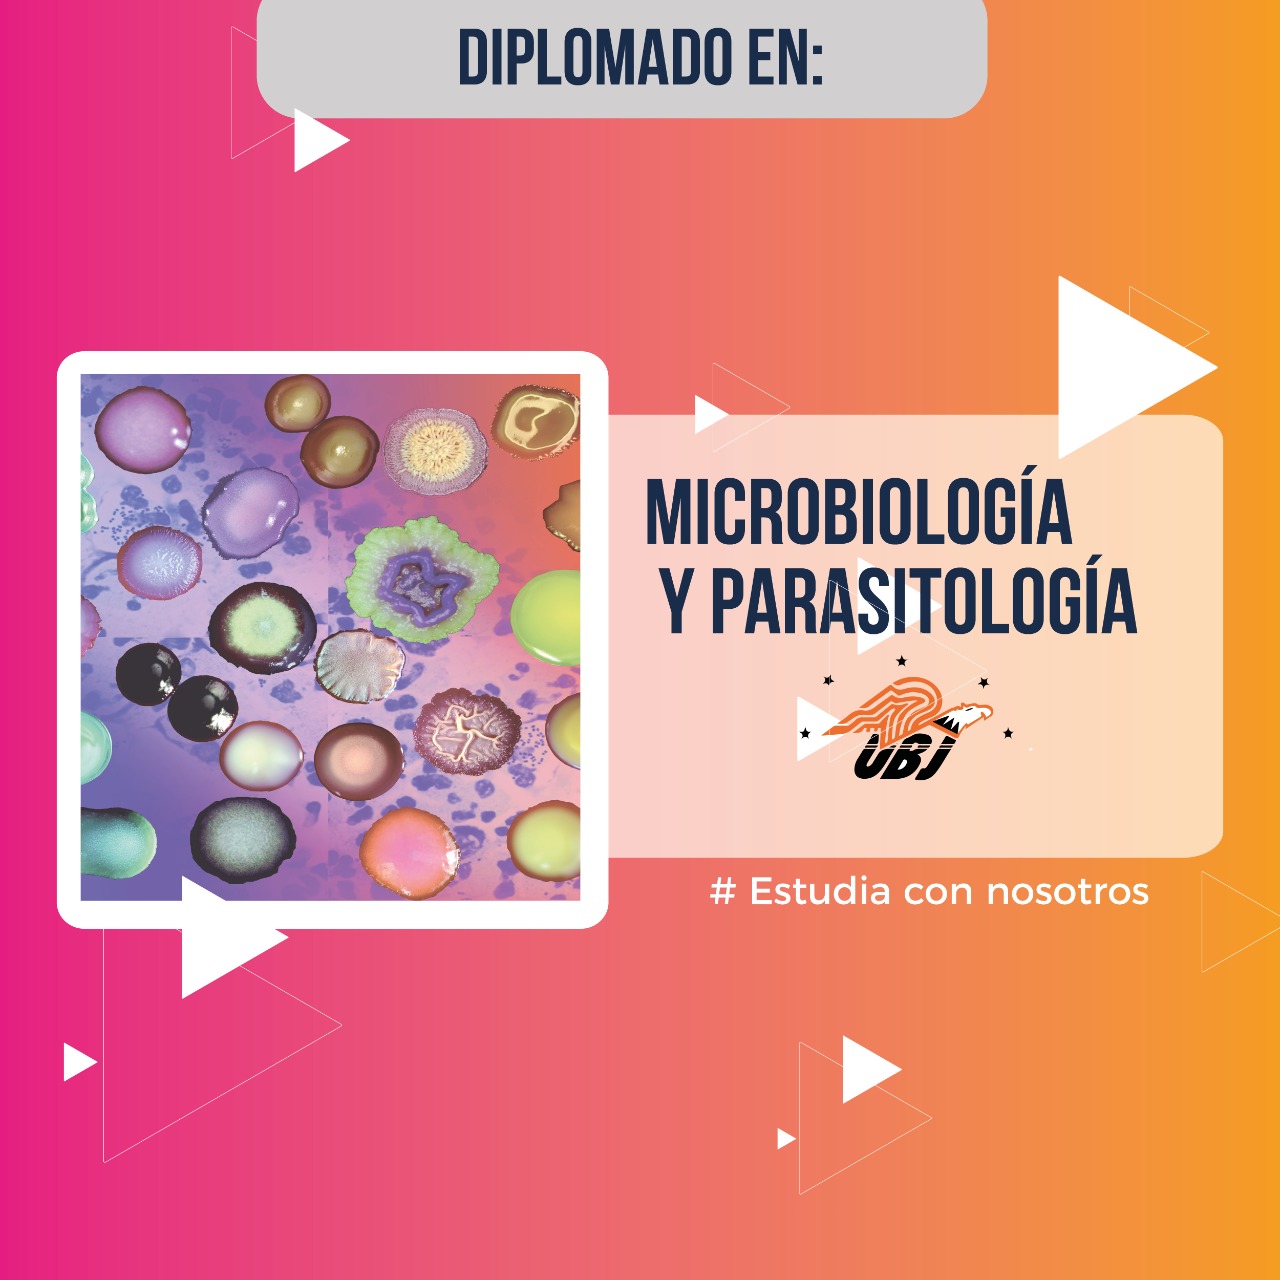 Diplomado Microbiología y Parasitología (UBJ)